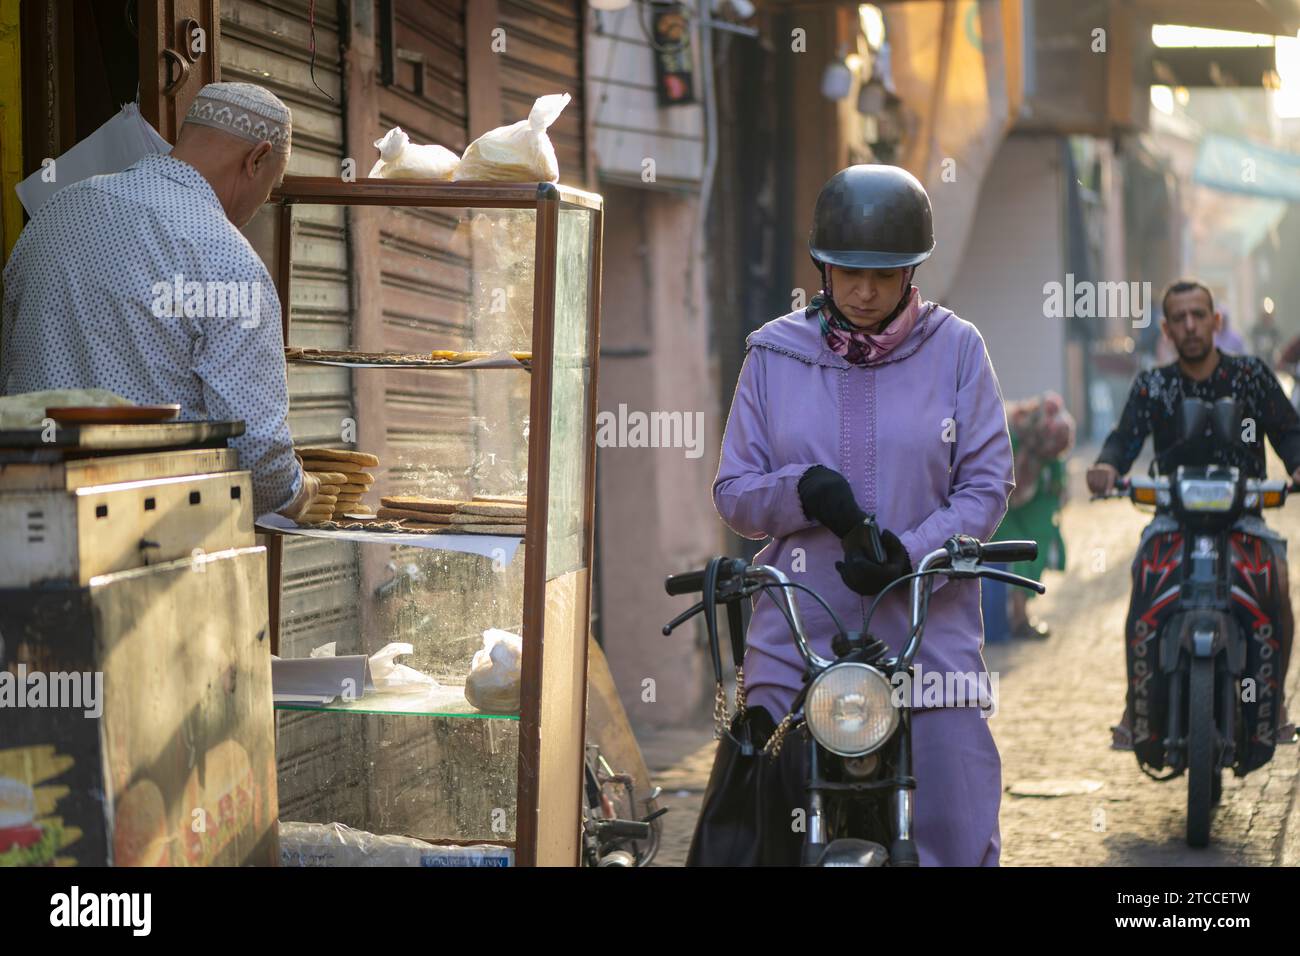 Marrakech, Maroc : une femme marocaine sur un scooter achète du pain frais dans une boulangerie à l'intérieur de la Médina de Marrakech. Banque D'Images